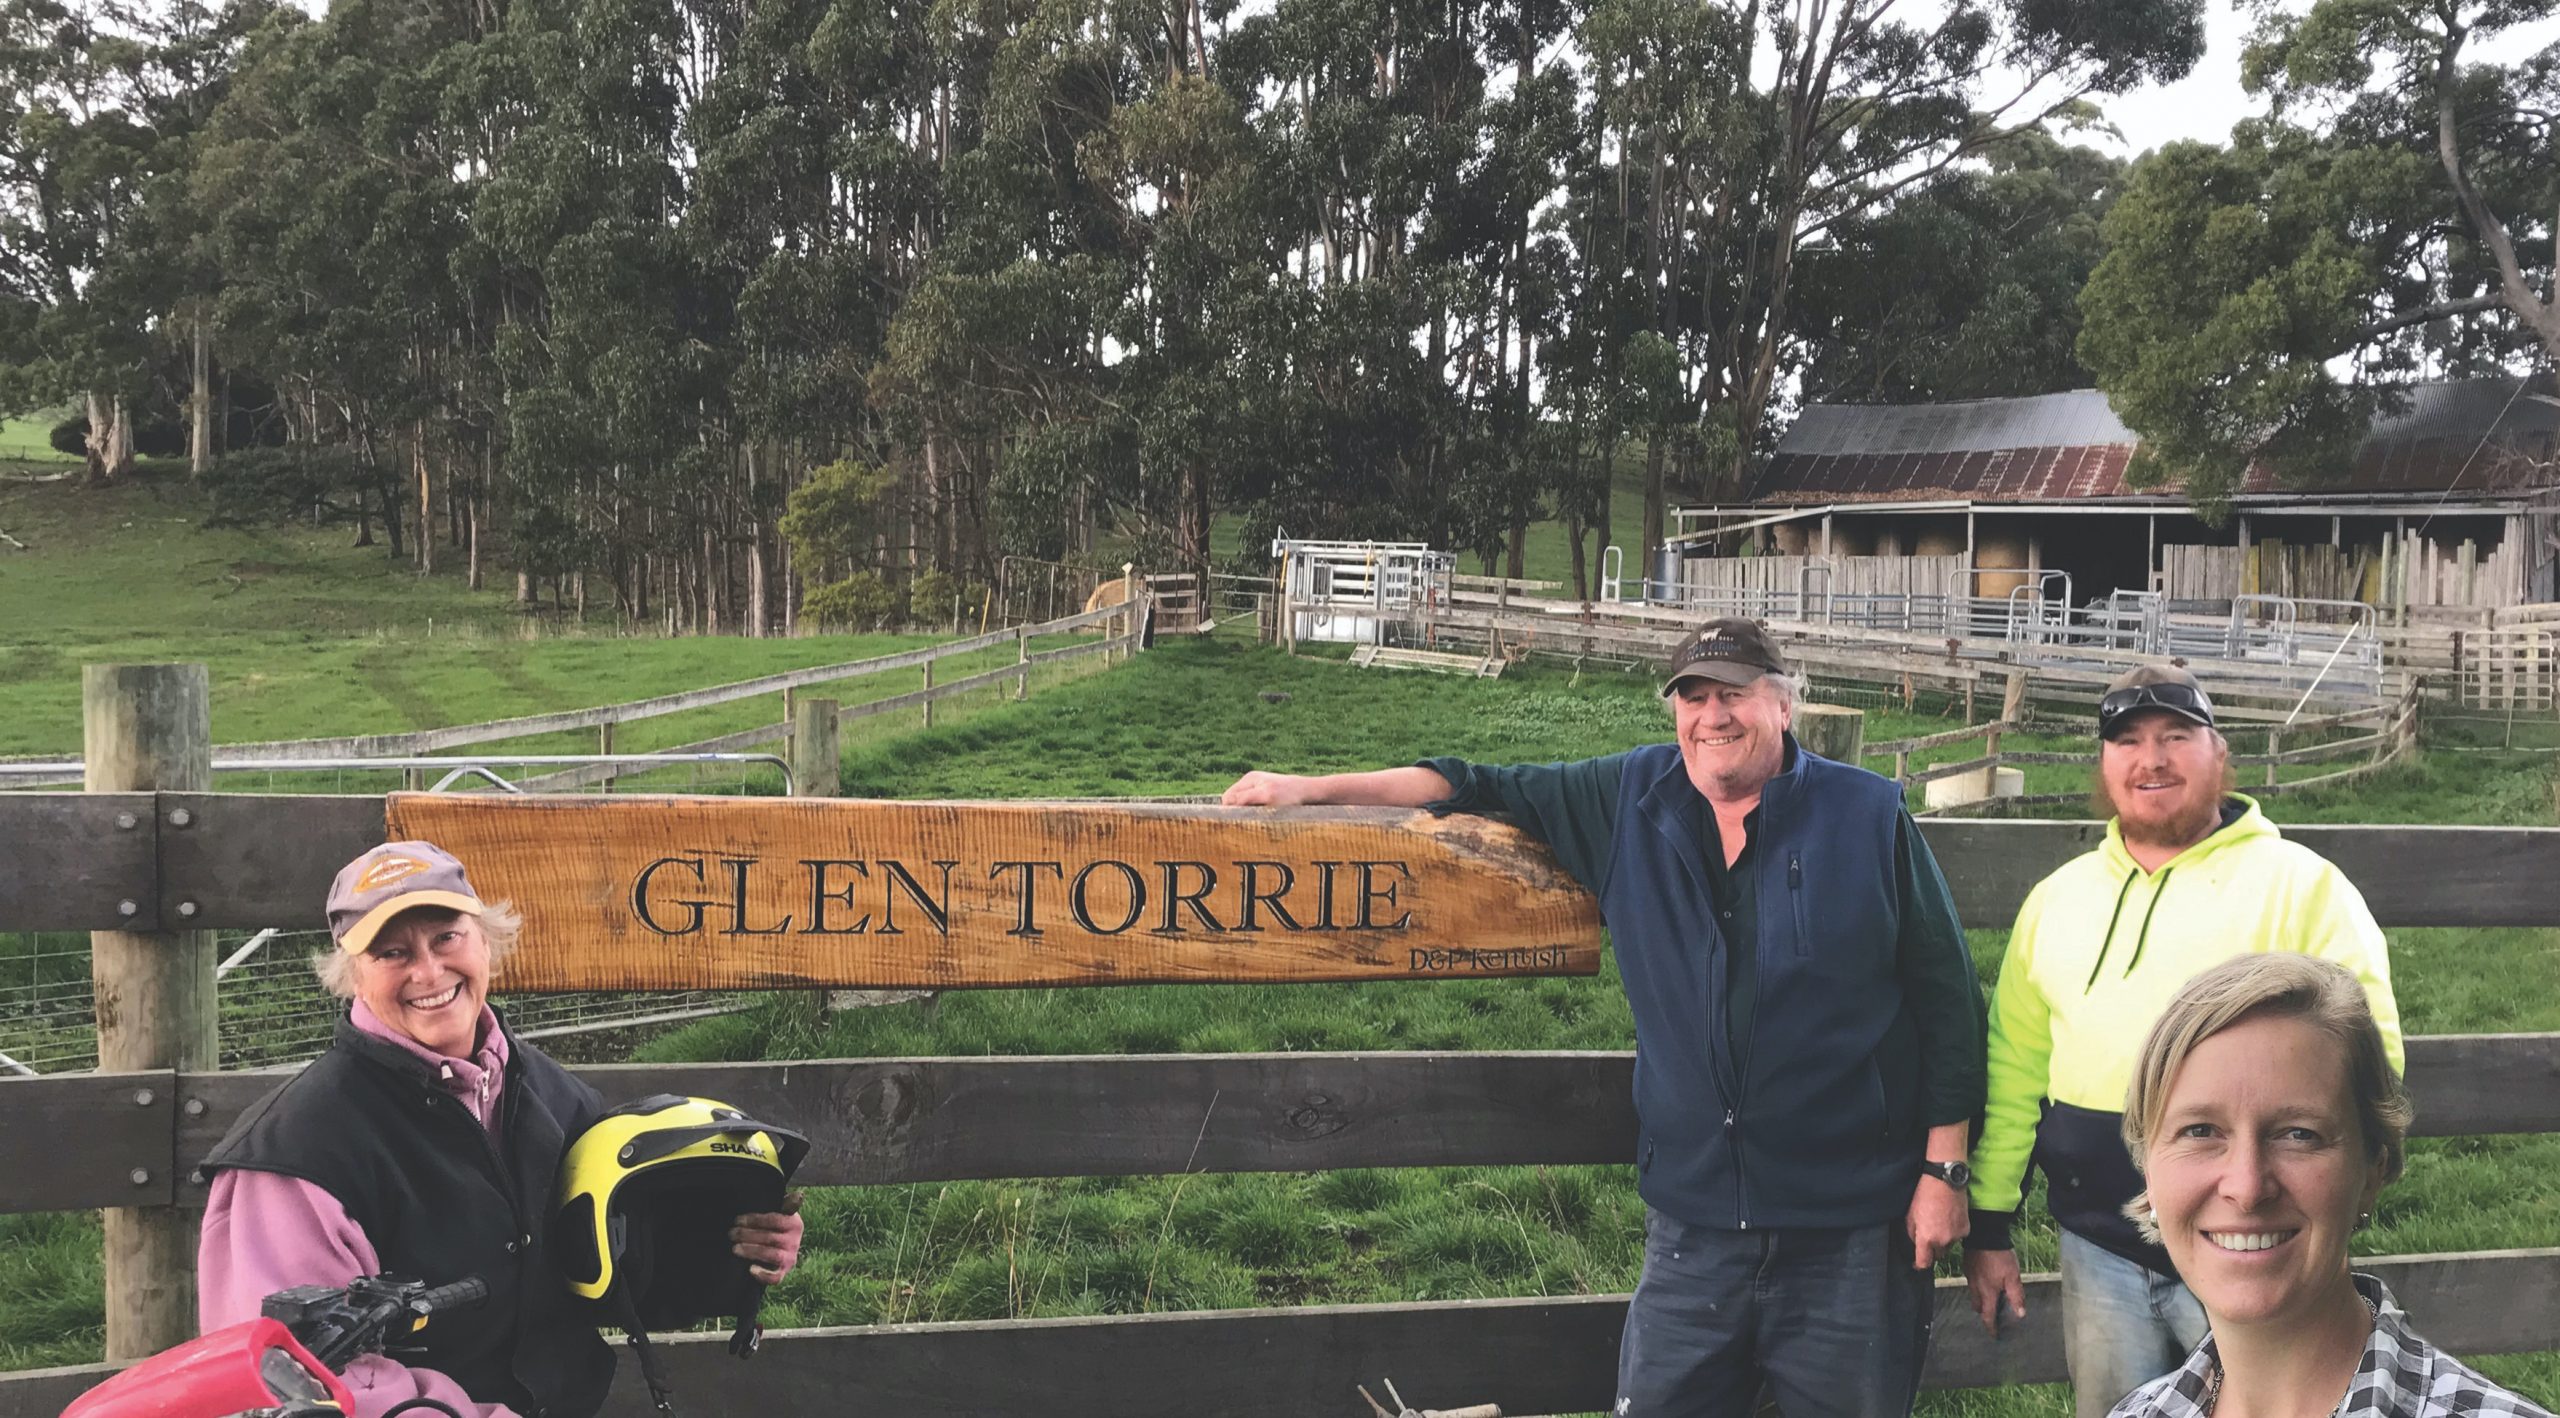 Glen Torrie Pastures